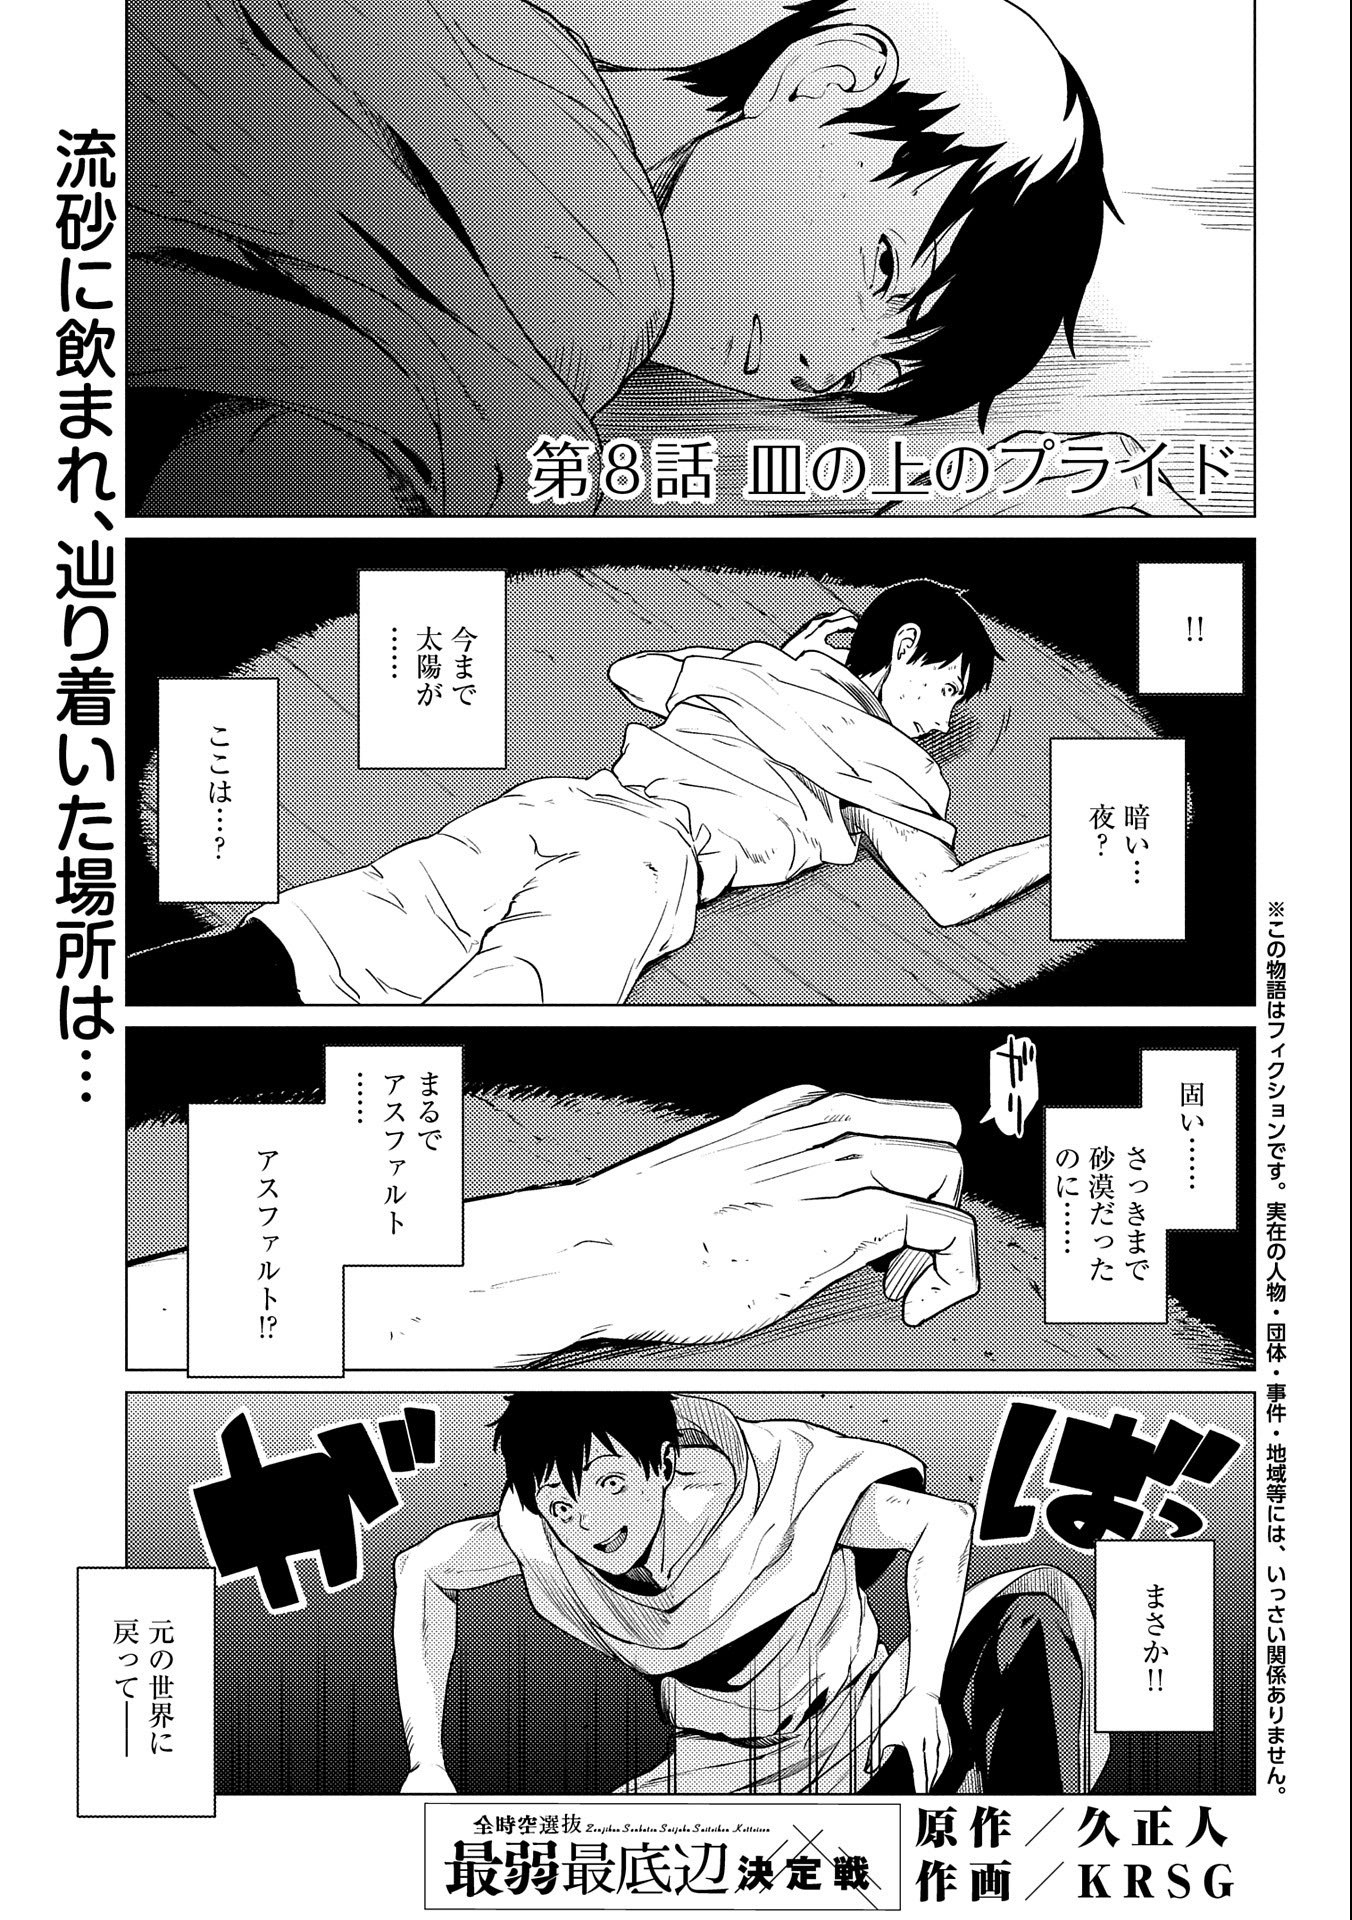 Zenjikuu Senbatsu Saijaku Saiteihen Ketteisen - Chapter 8 - Page 1